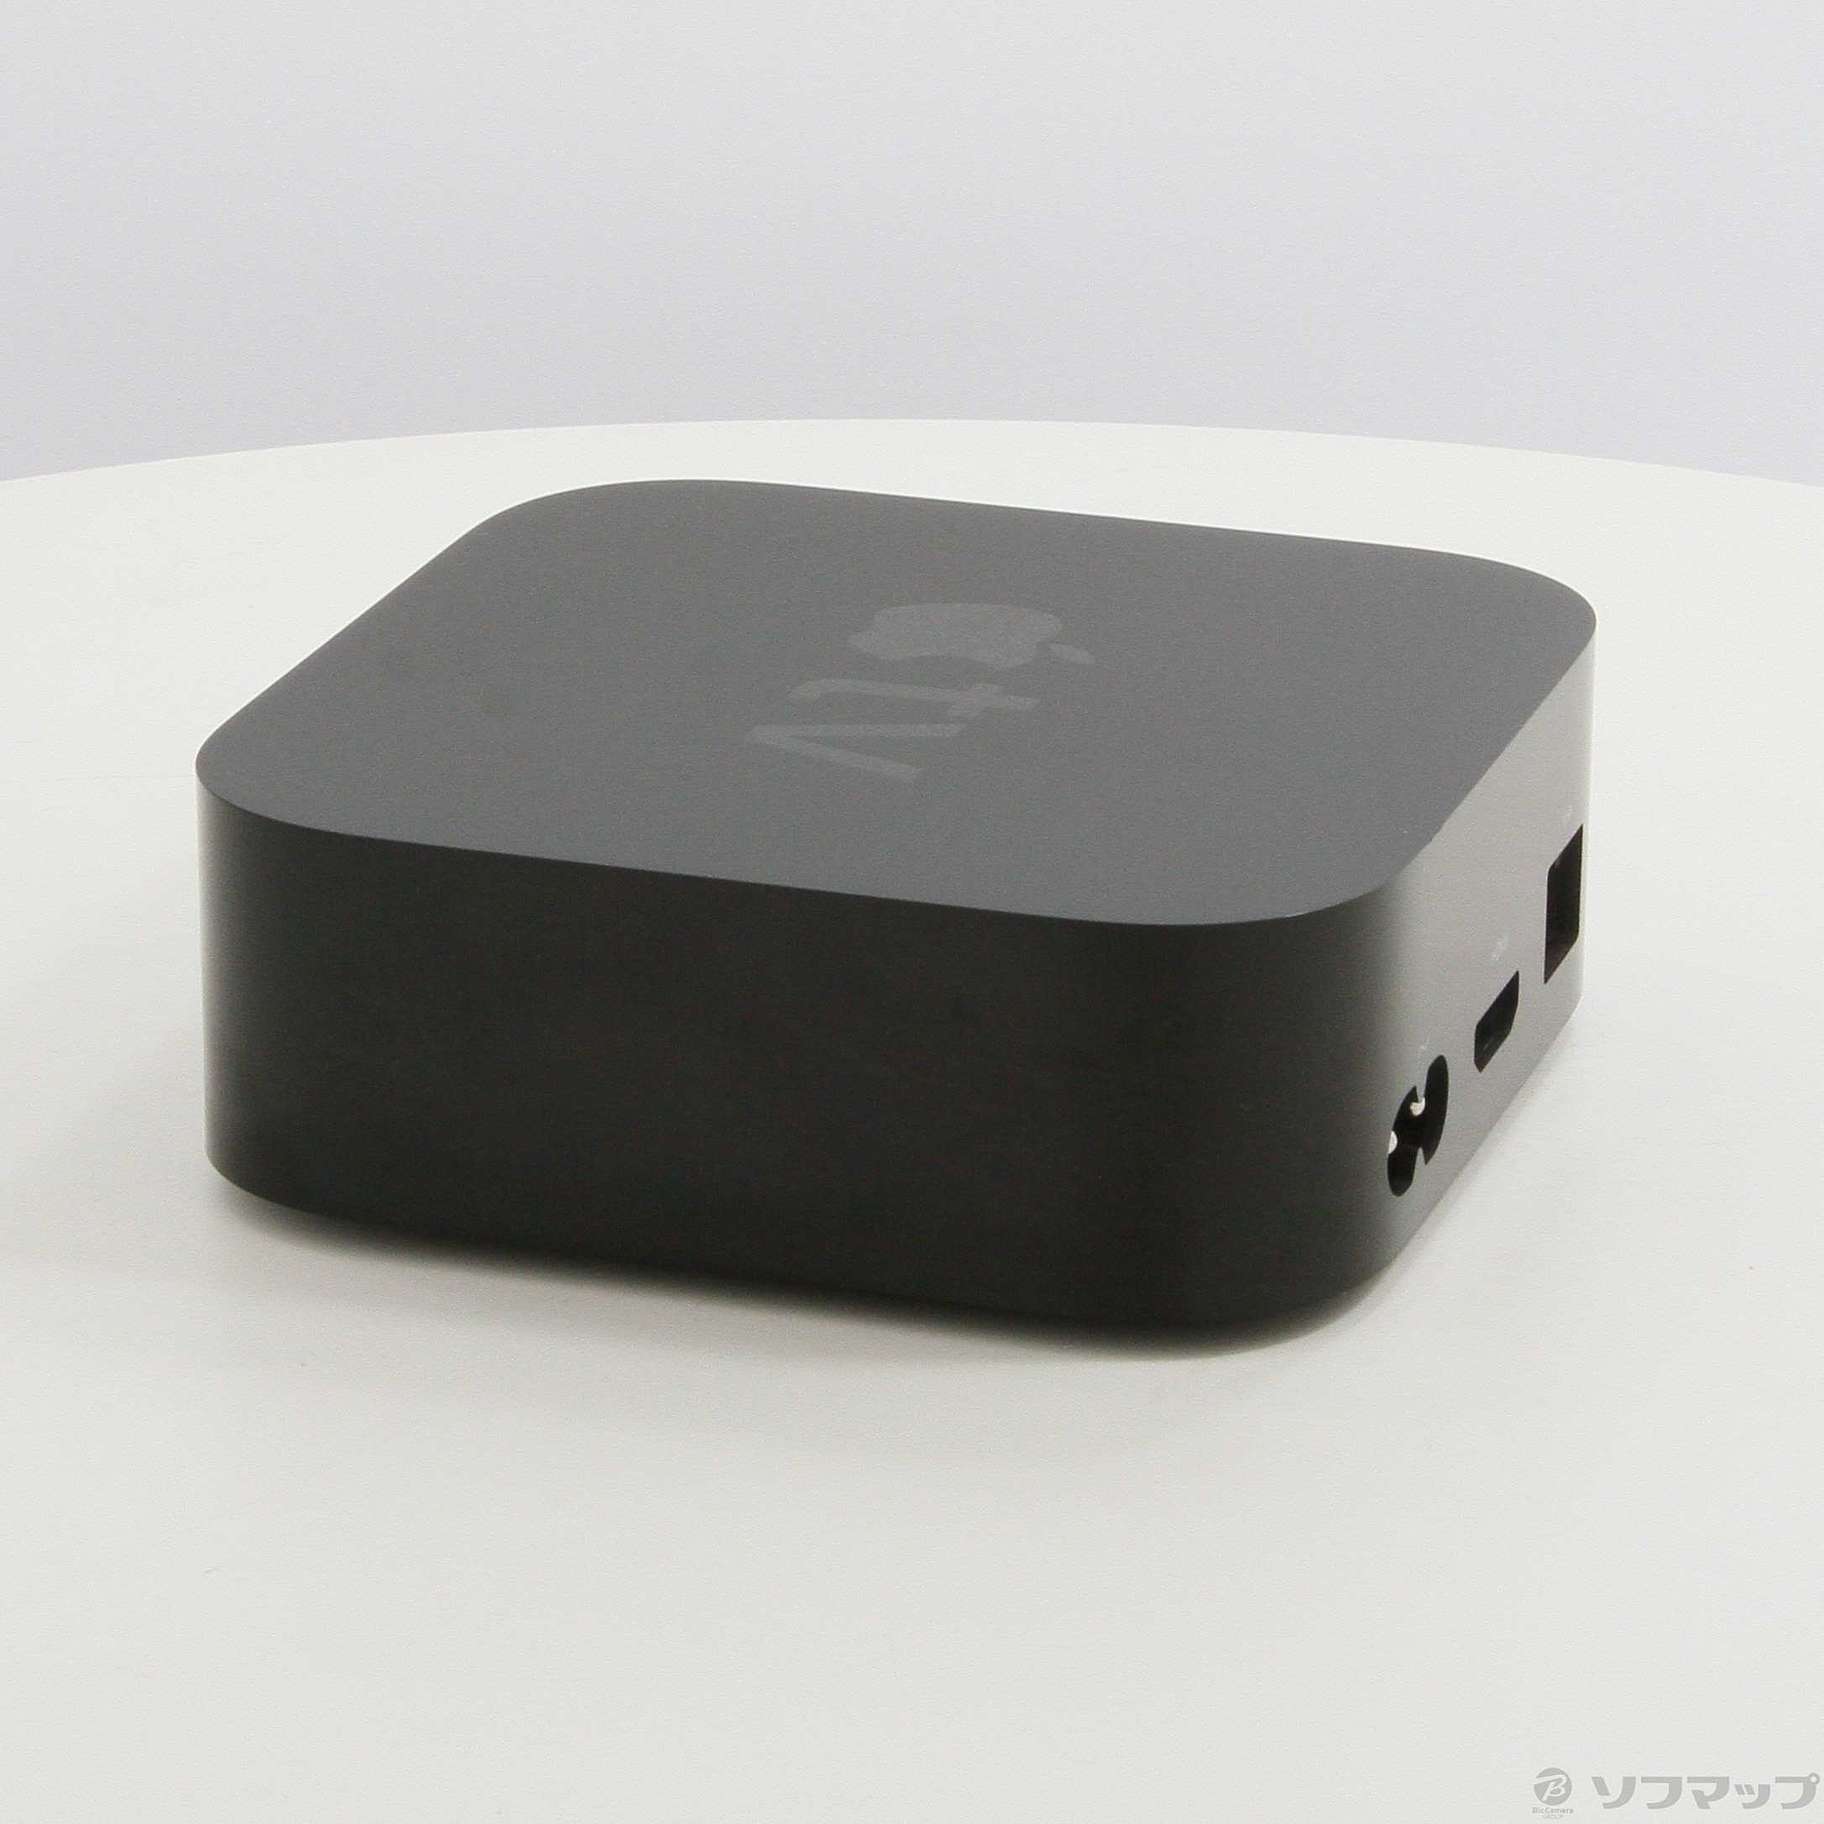 【送料込み】アップル Apple TV 4K 64GB MP7P2J/A 5世代